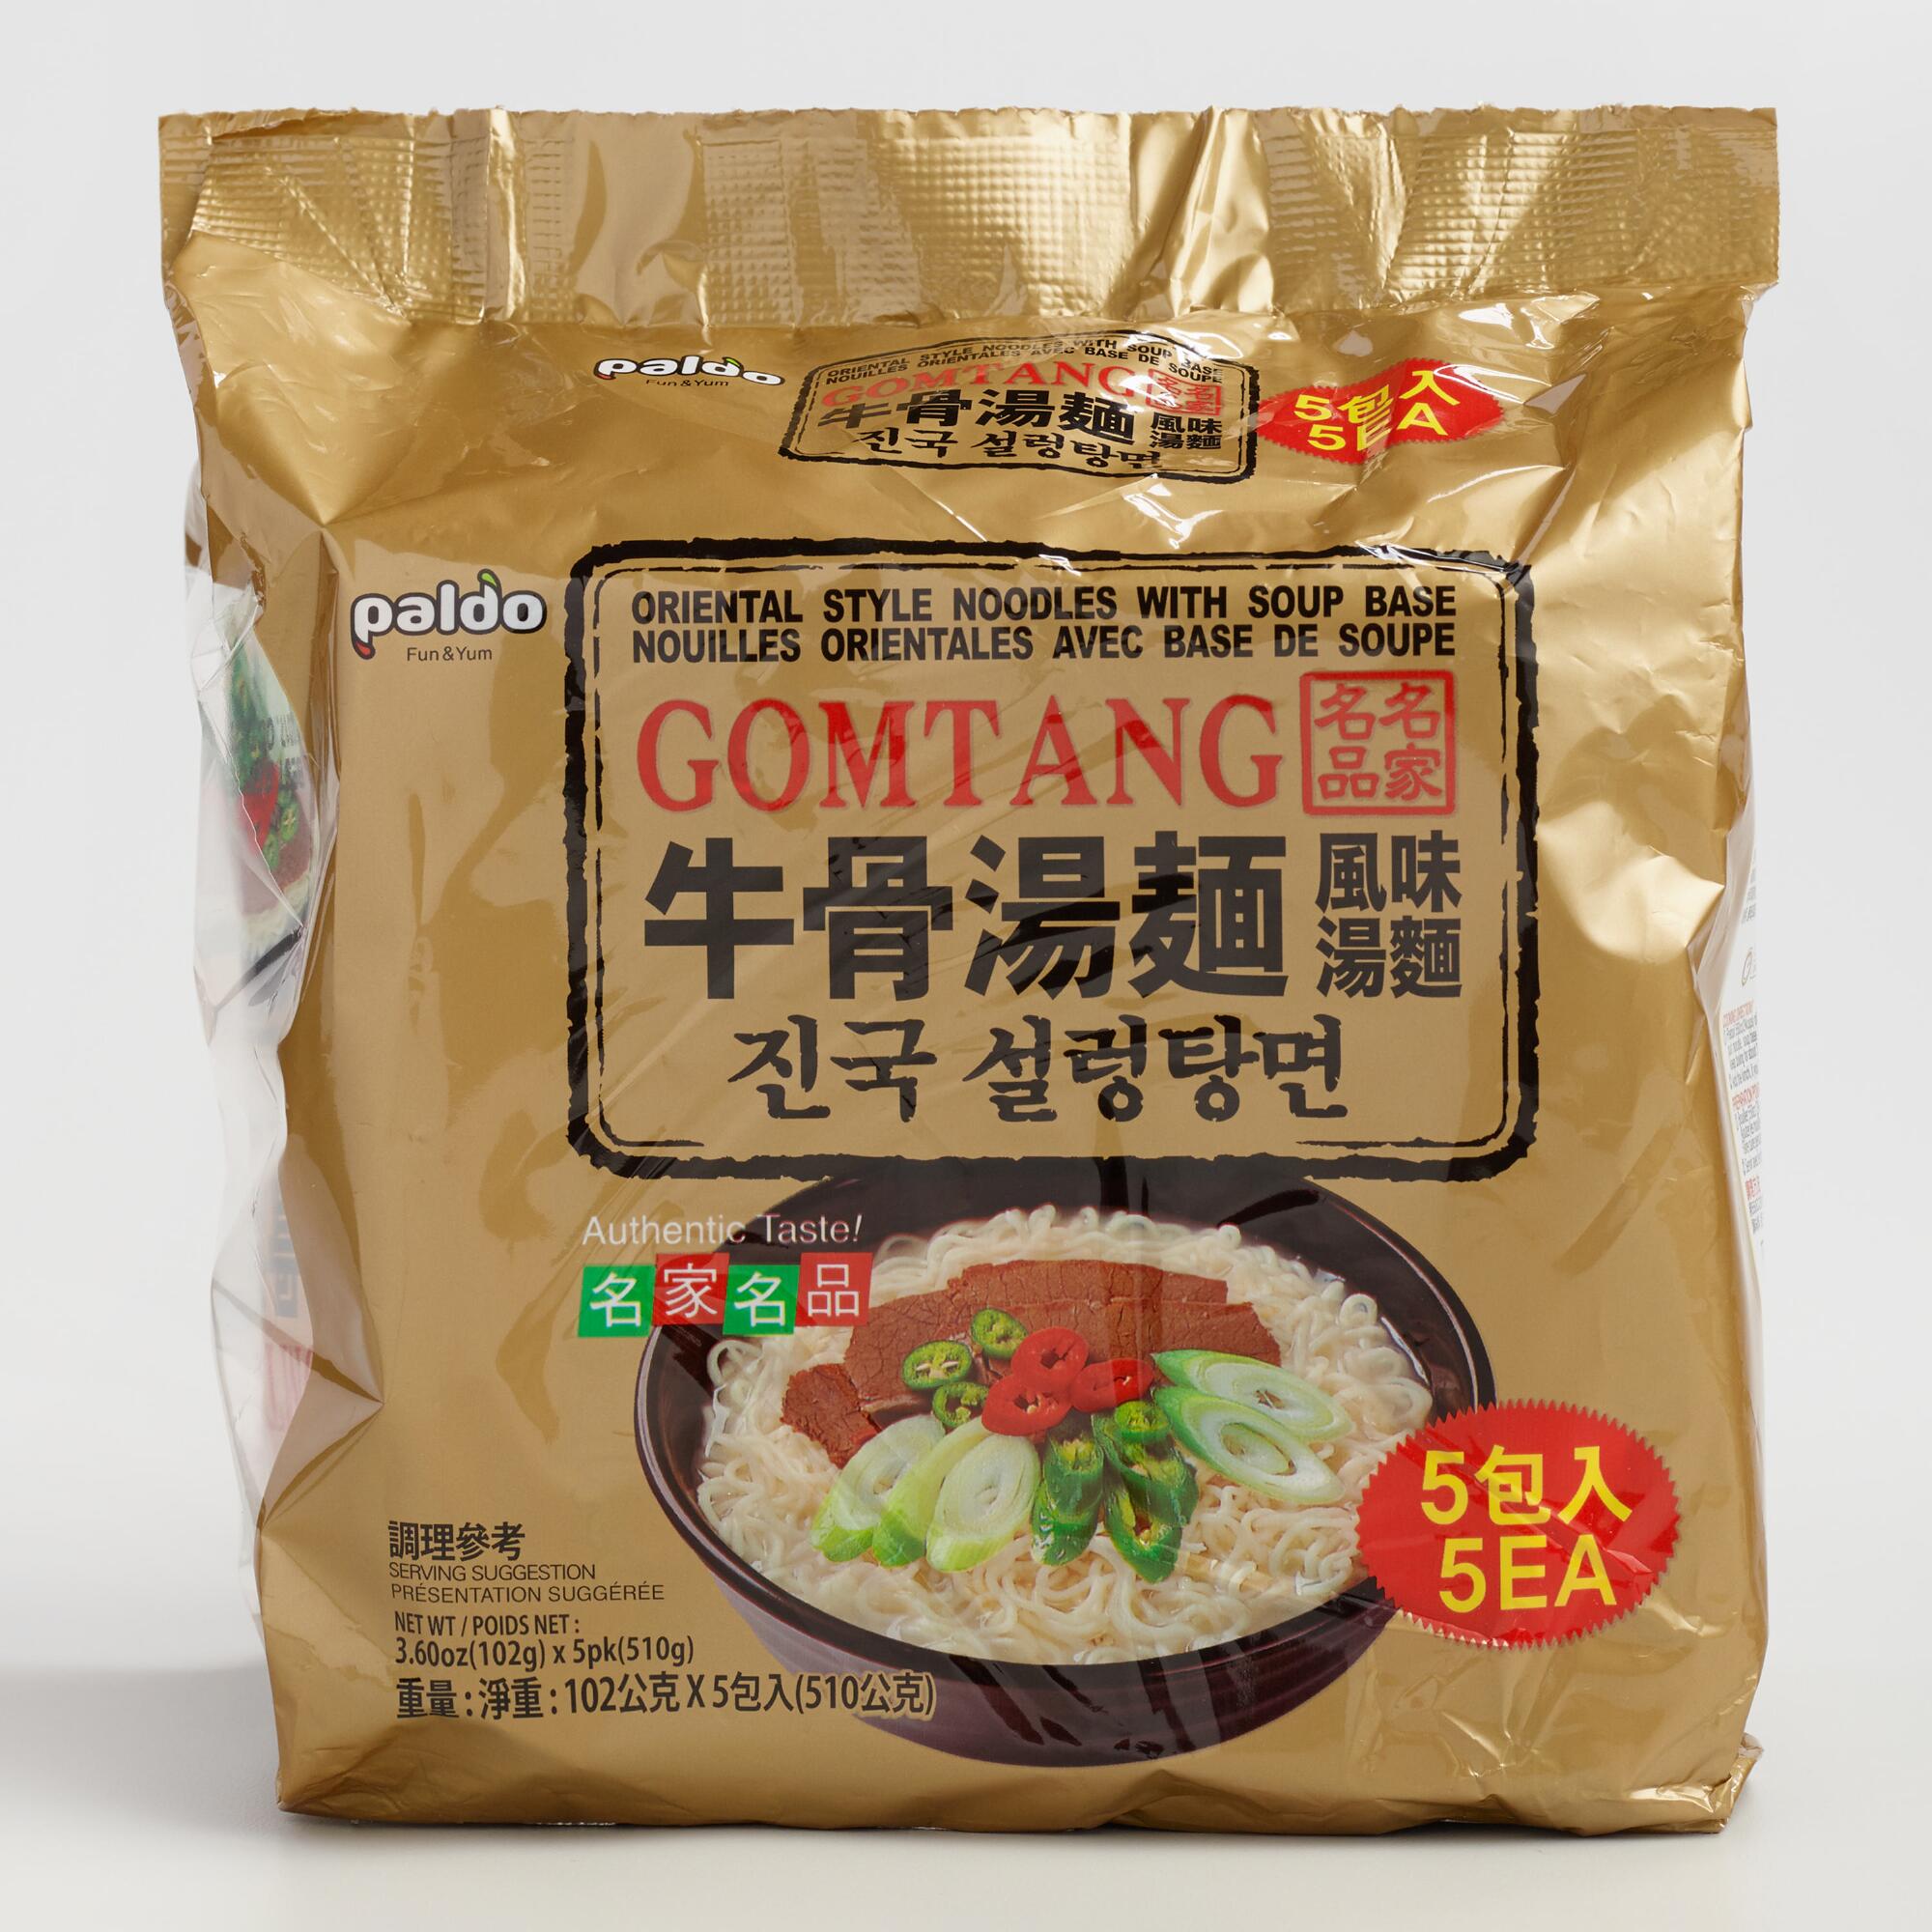 Paldo Gomtang Noodles 5 Pack by World Market